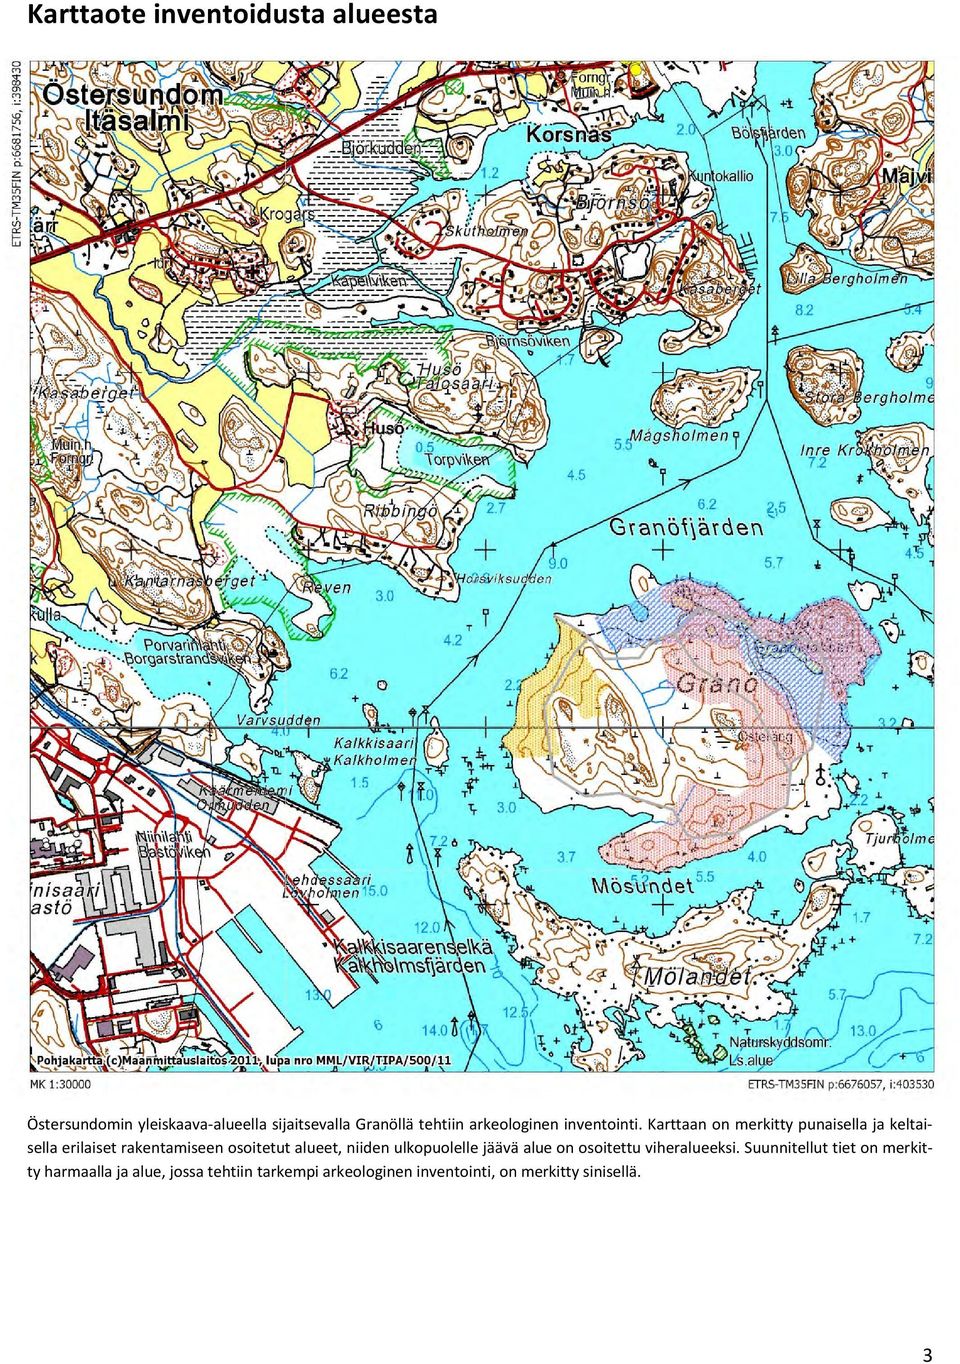 Karttaan on merkitty punaisella ja keltaisella erilaiset rakentamiseen osoitetut alueet, niiden